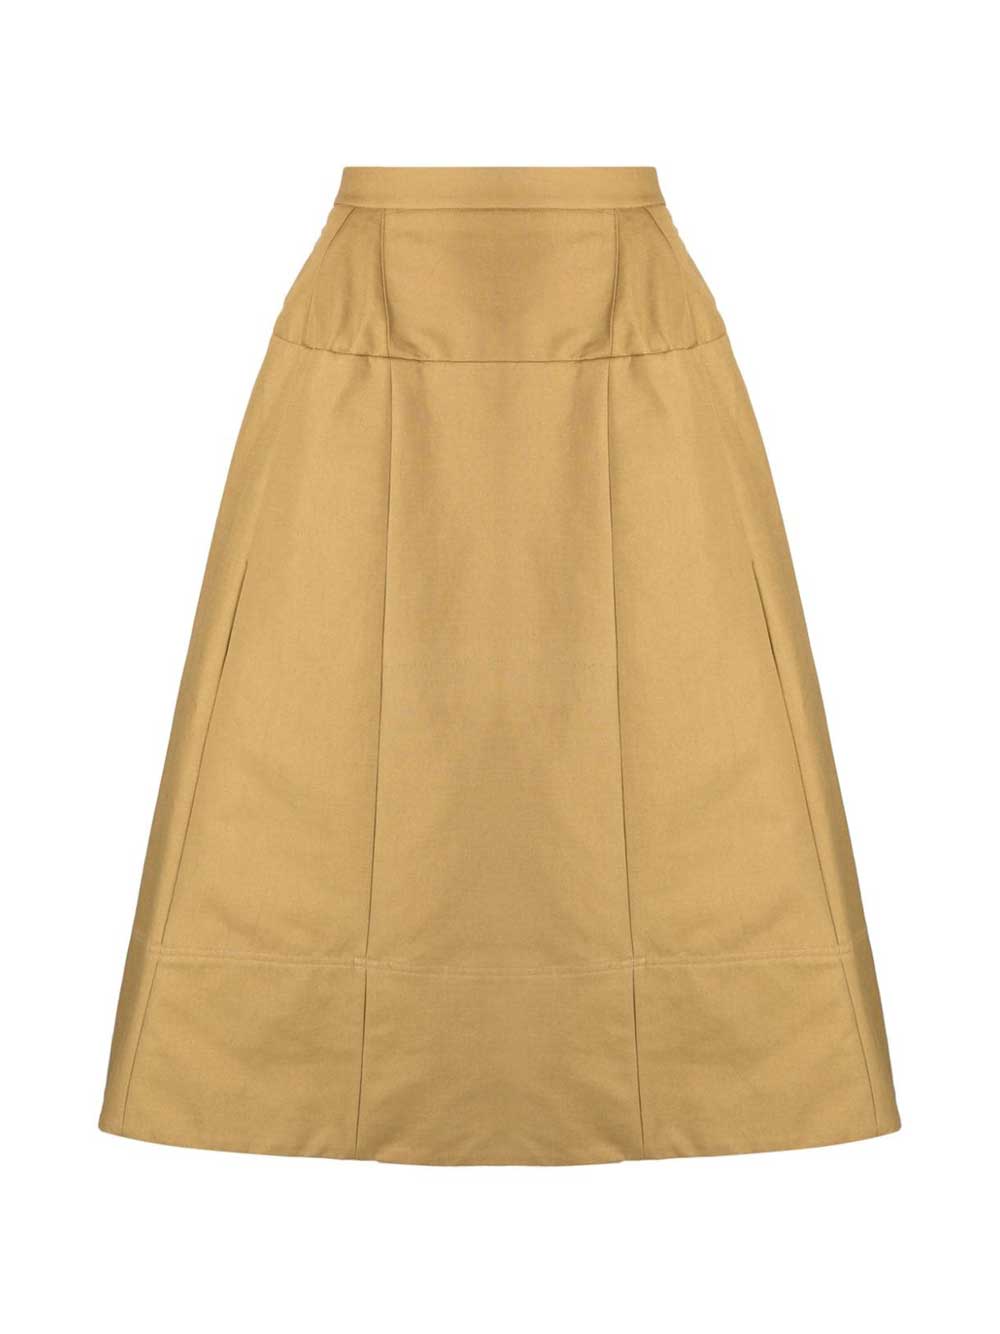 Sculpted Cotton Skirt